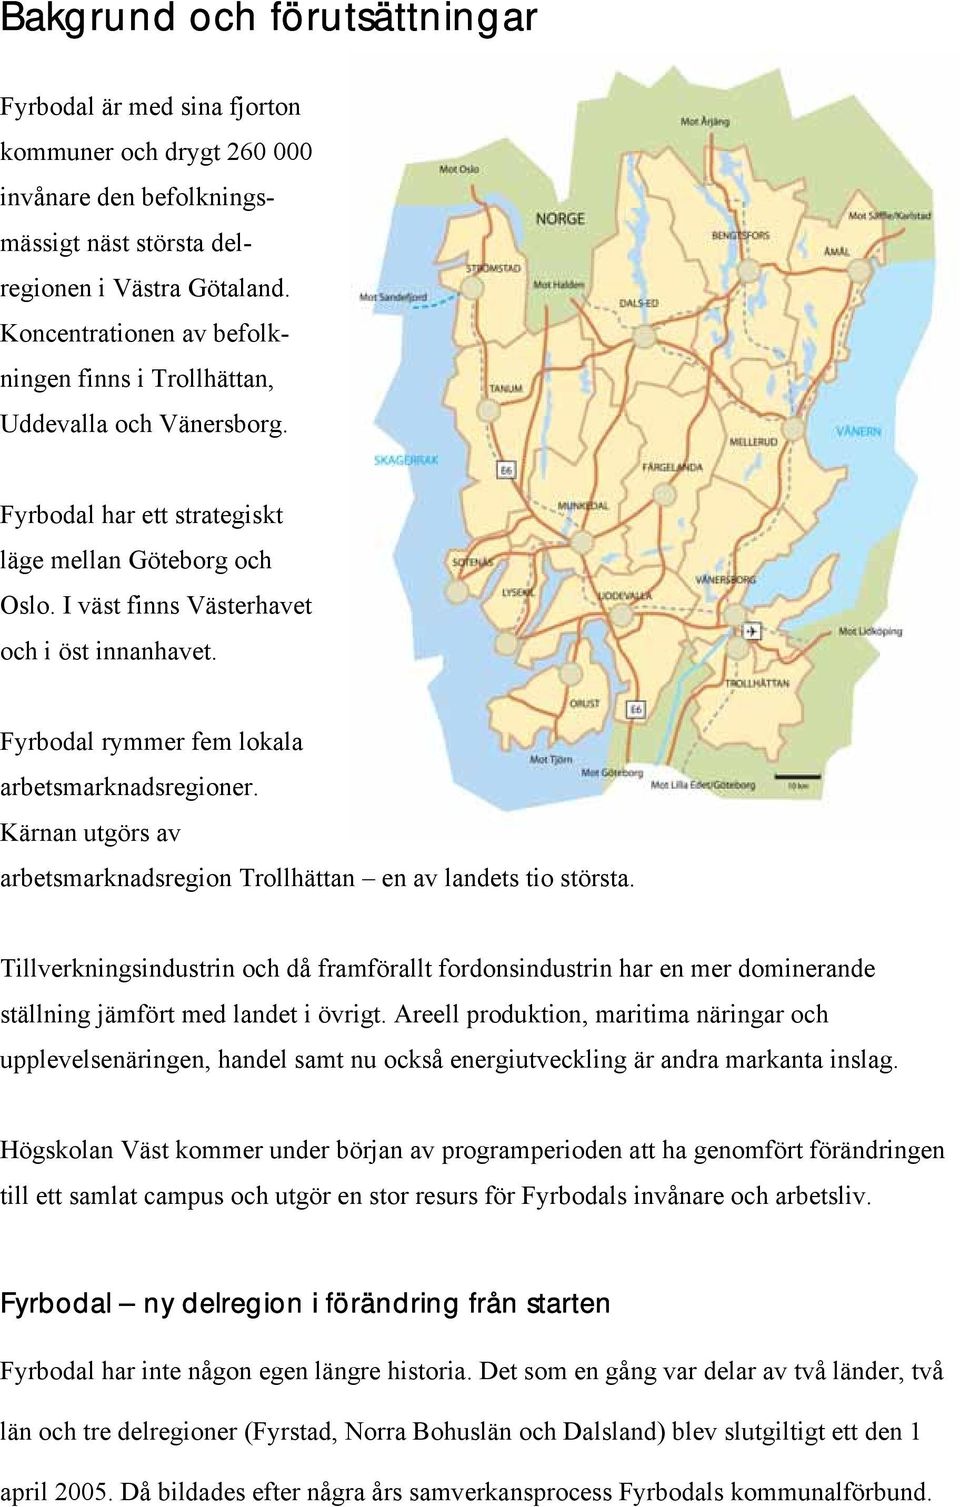 Fyrbodal rymmer fem lokala arbetsmarknadsregioner. Kärnan utgörs av arbetsmarknadsregion Trollhättan en av landets tio största.